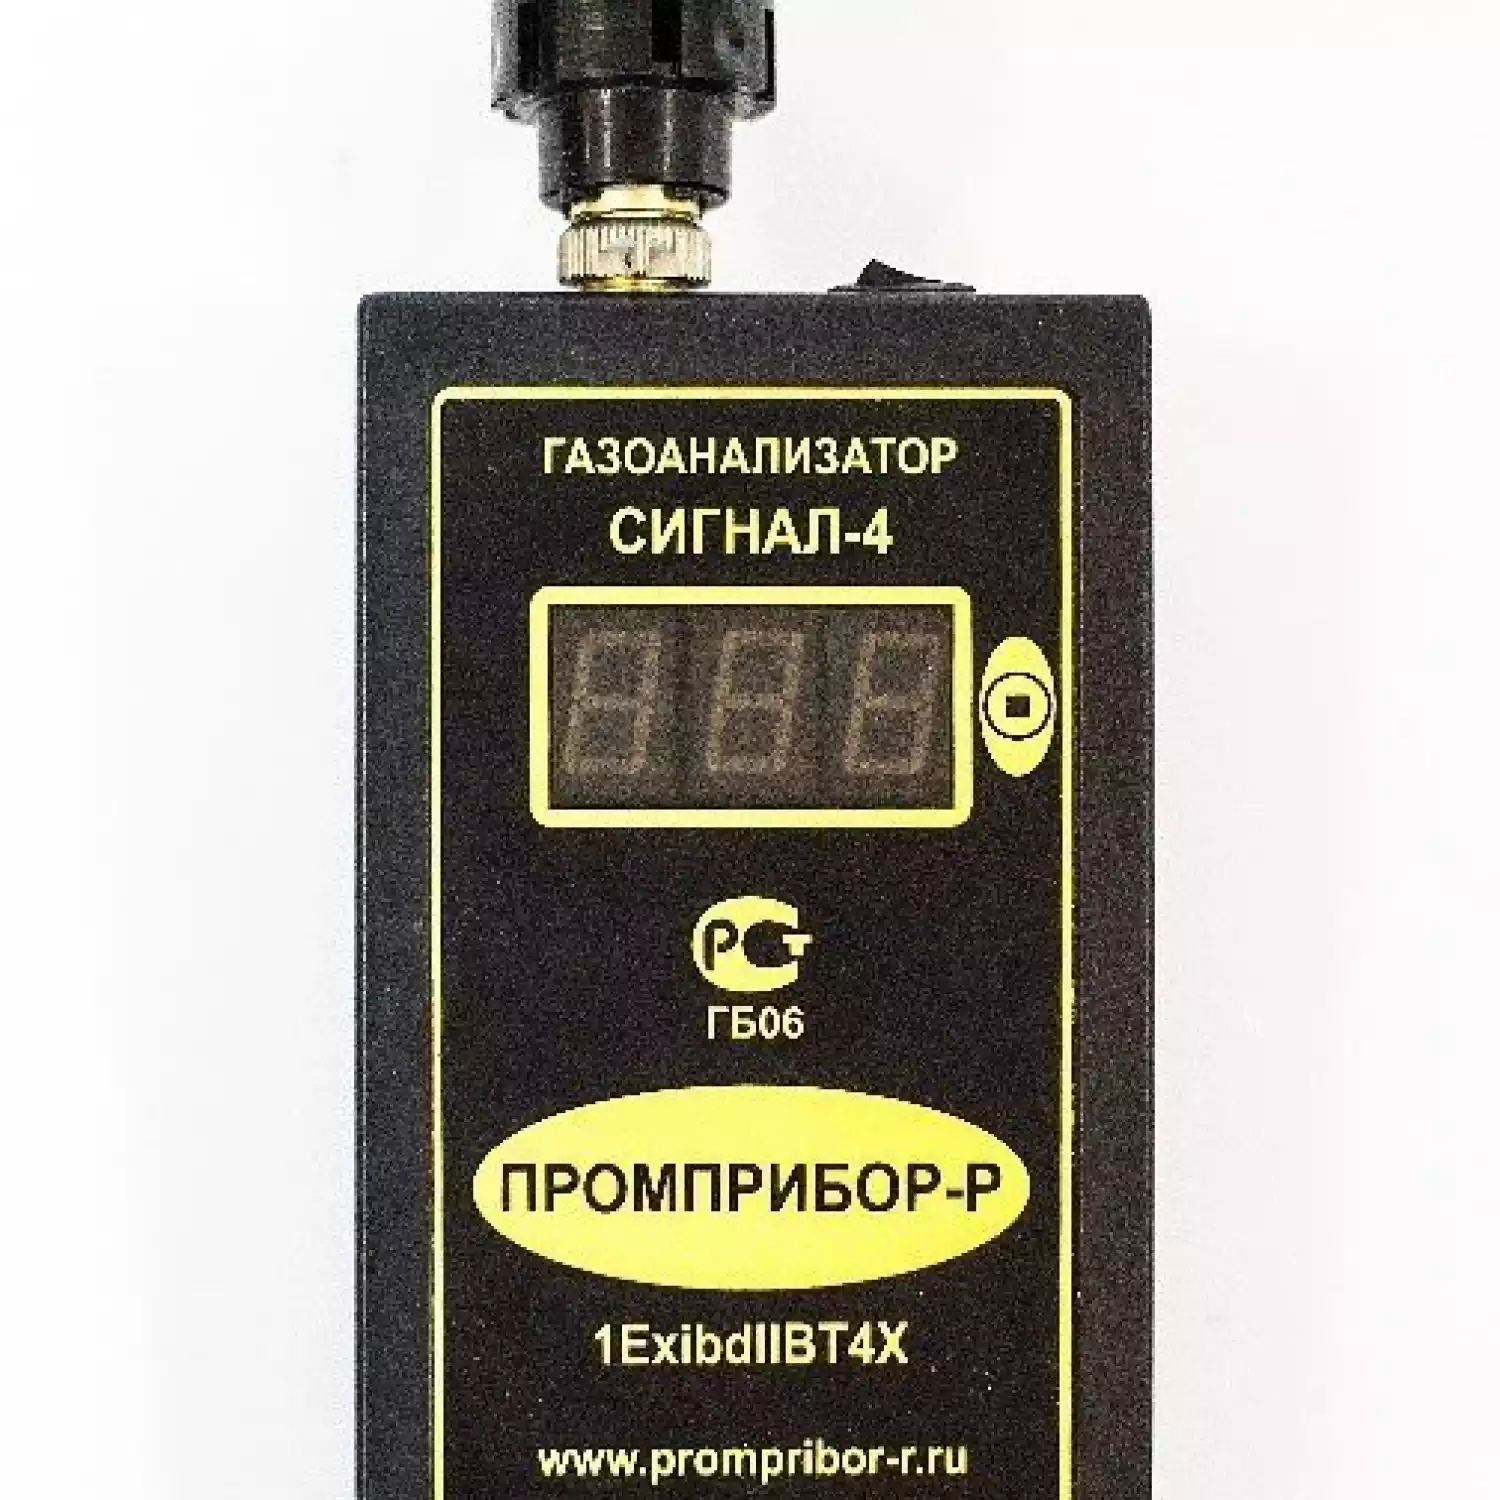 Персональный переносной газоанализатор метана (СН4) Сигнал-4 (Термокаталитический) - 1